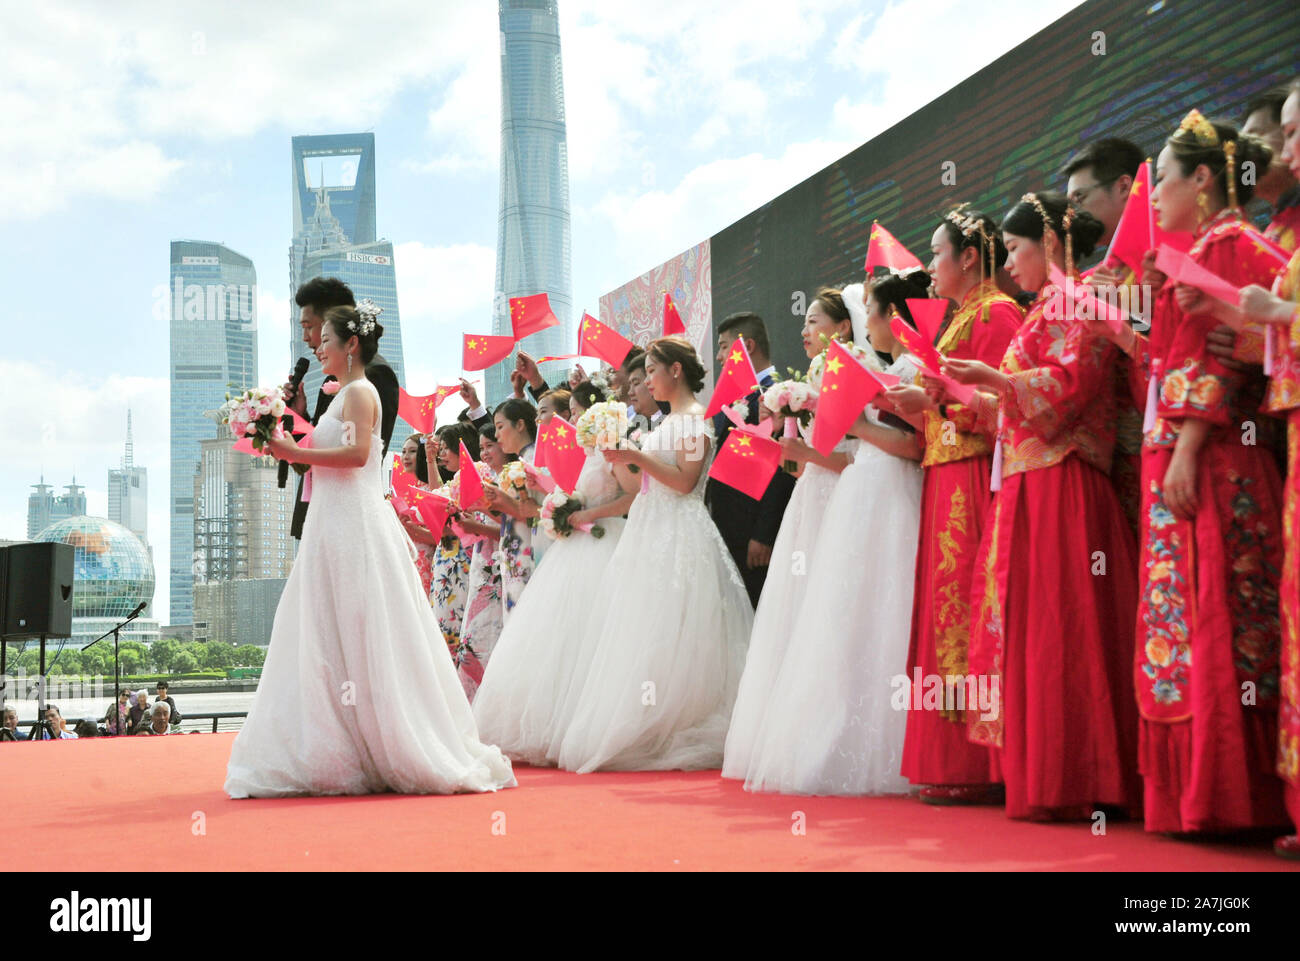 15 coppie di sposi novelli a un matrimonio di gruppo ti celebrare il settantesimo anniversario della fondazione della Repubblica a Shanghai in Cina, 19 settembre 2019. Foto Stock